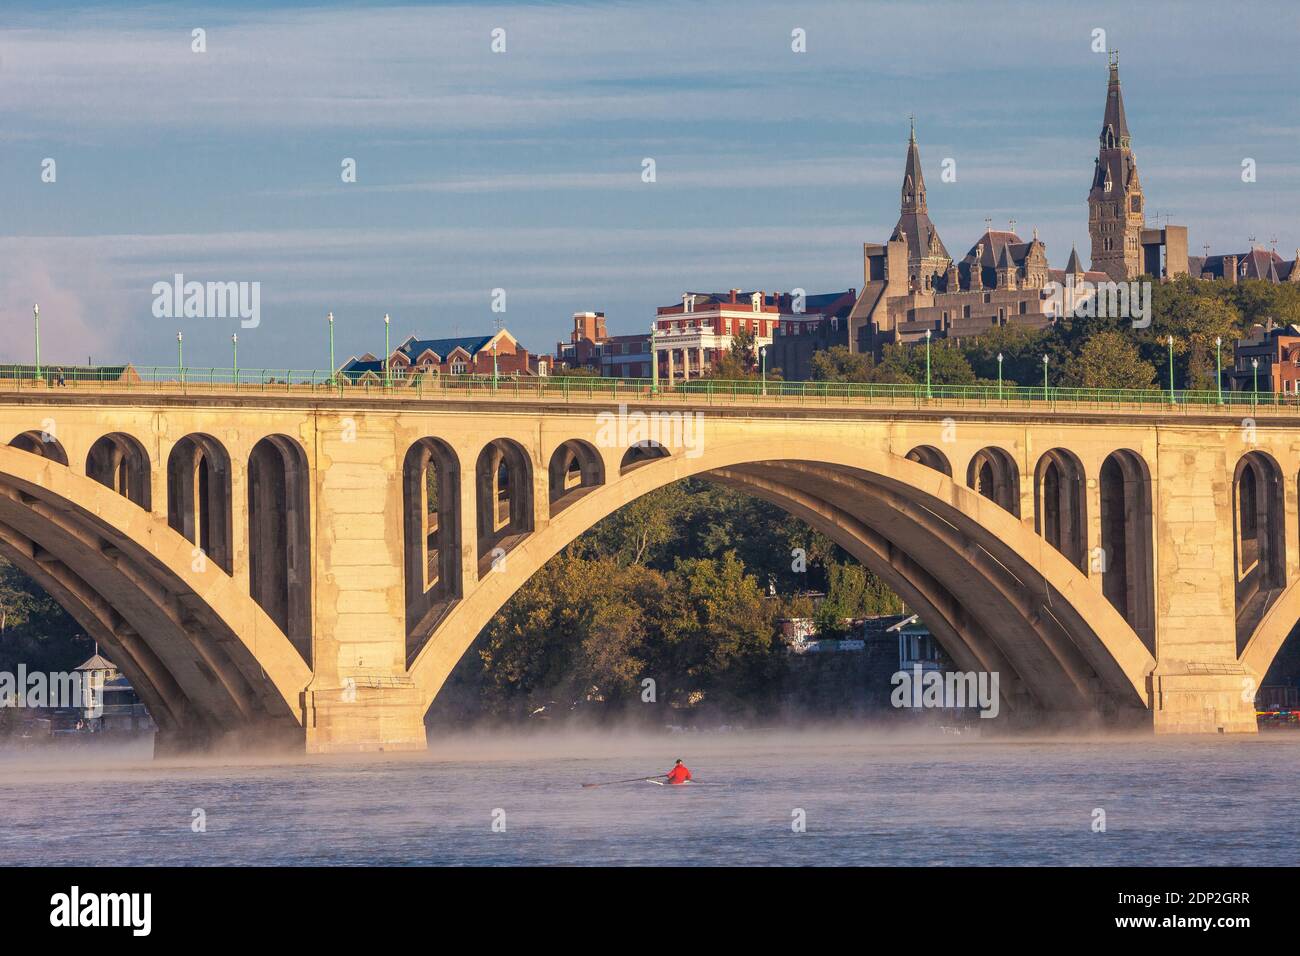 Petit matin Rower à Skiff sur le fleuve Potomac, Key Bridge et Georgetown University in Background, Washington DC, Etats-Unis. Banque D'Images